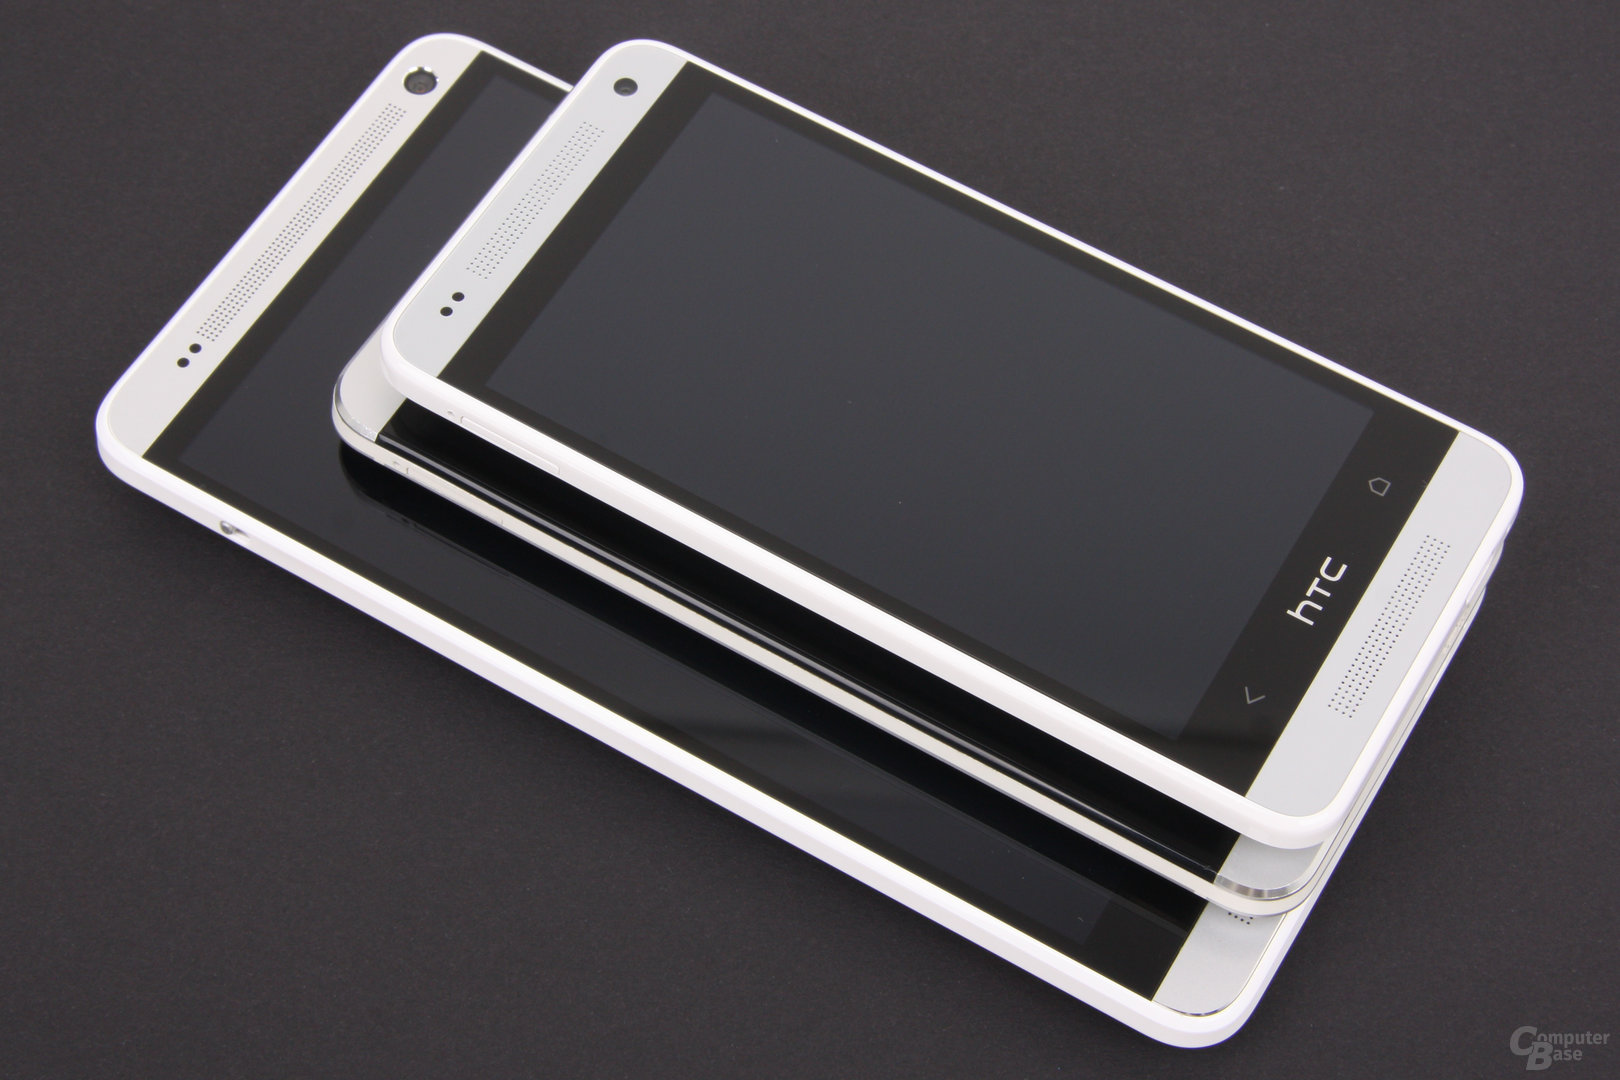 HTC One max / One / One mini